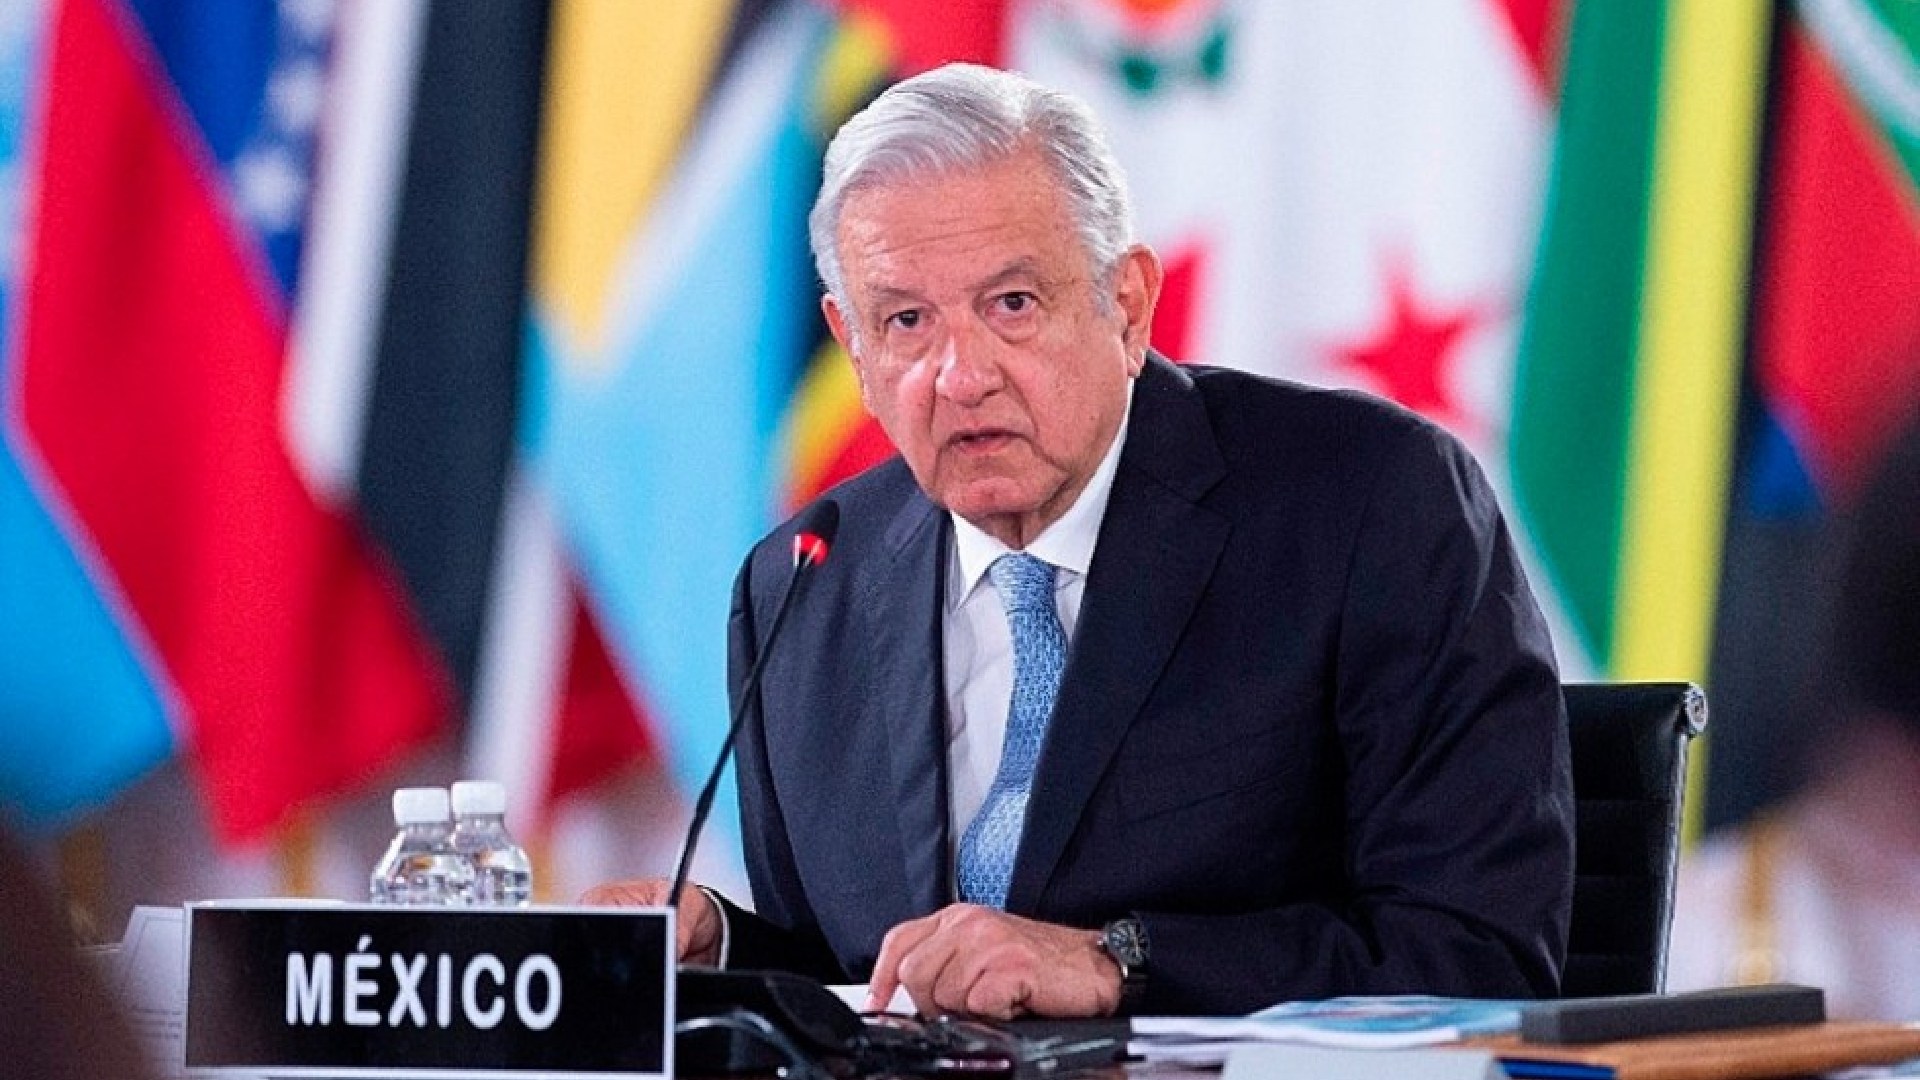 López Obrador aseguró que reunión de la Celac ocurrió en ambiente de mucho respeto: “No tenemos problema con ningún gobierno” - Infobae